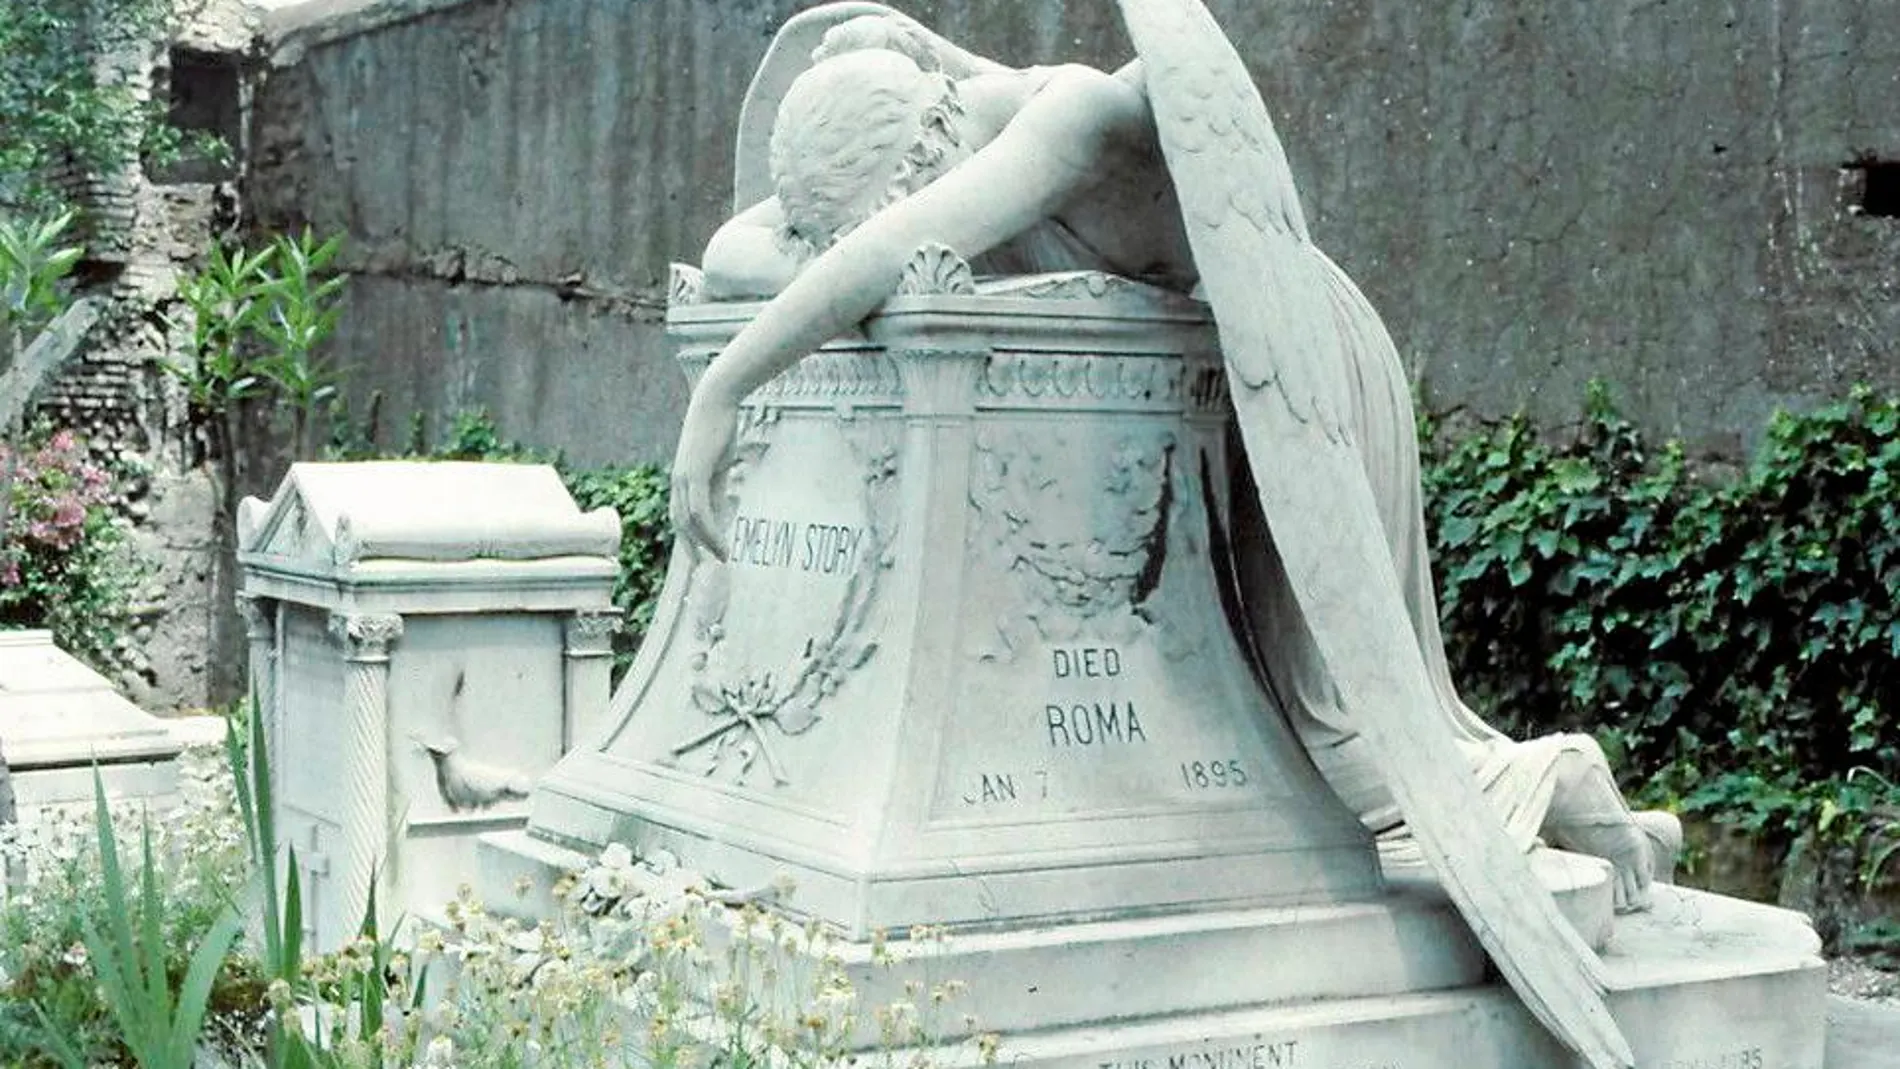 Este monumento fue el último trabajo del escultor William Wetmore Story y lo hizo en memoria de Evelyn Story, su esposa